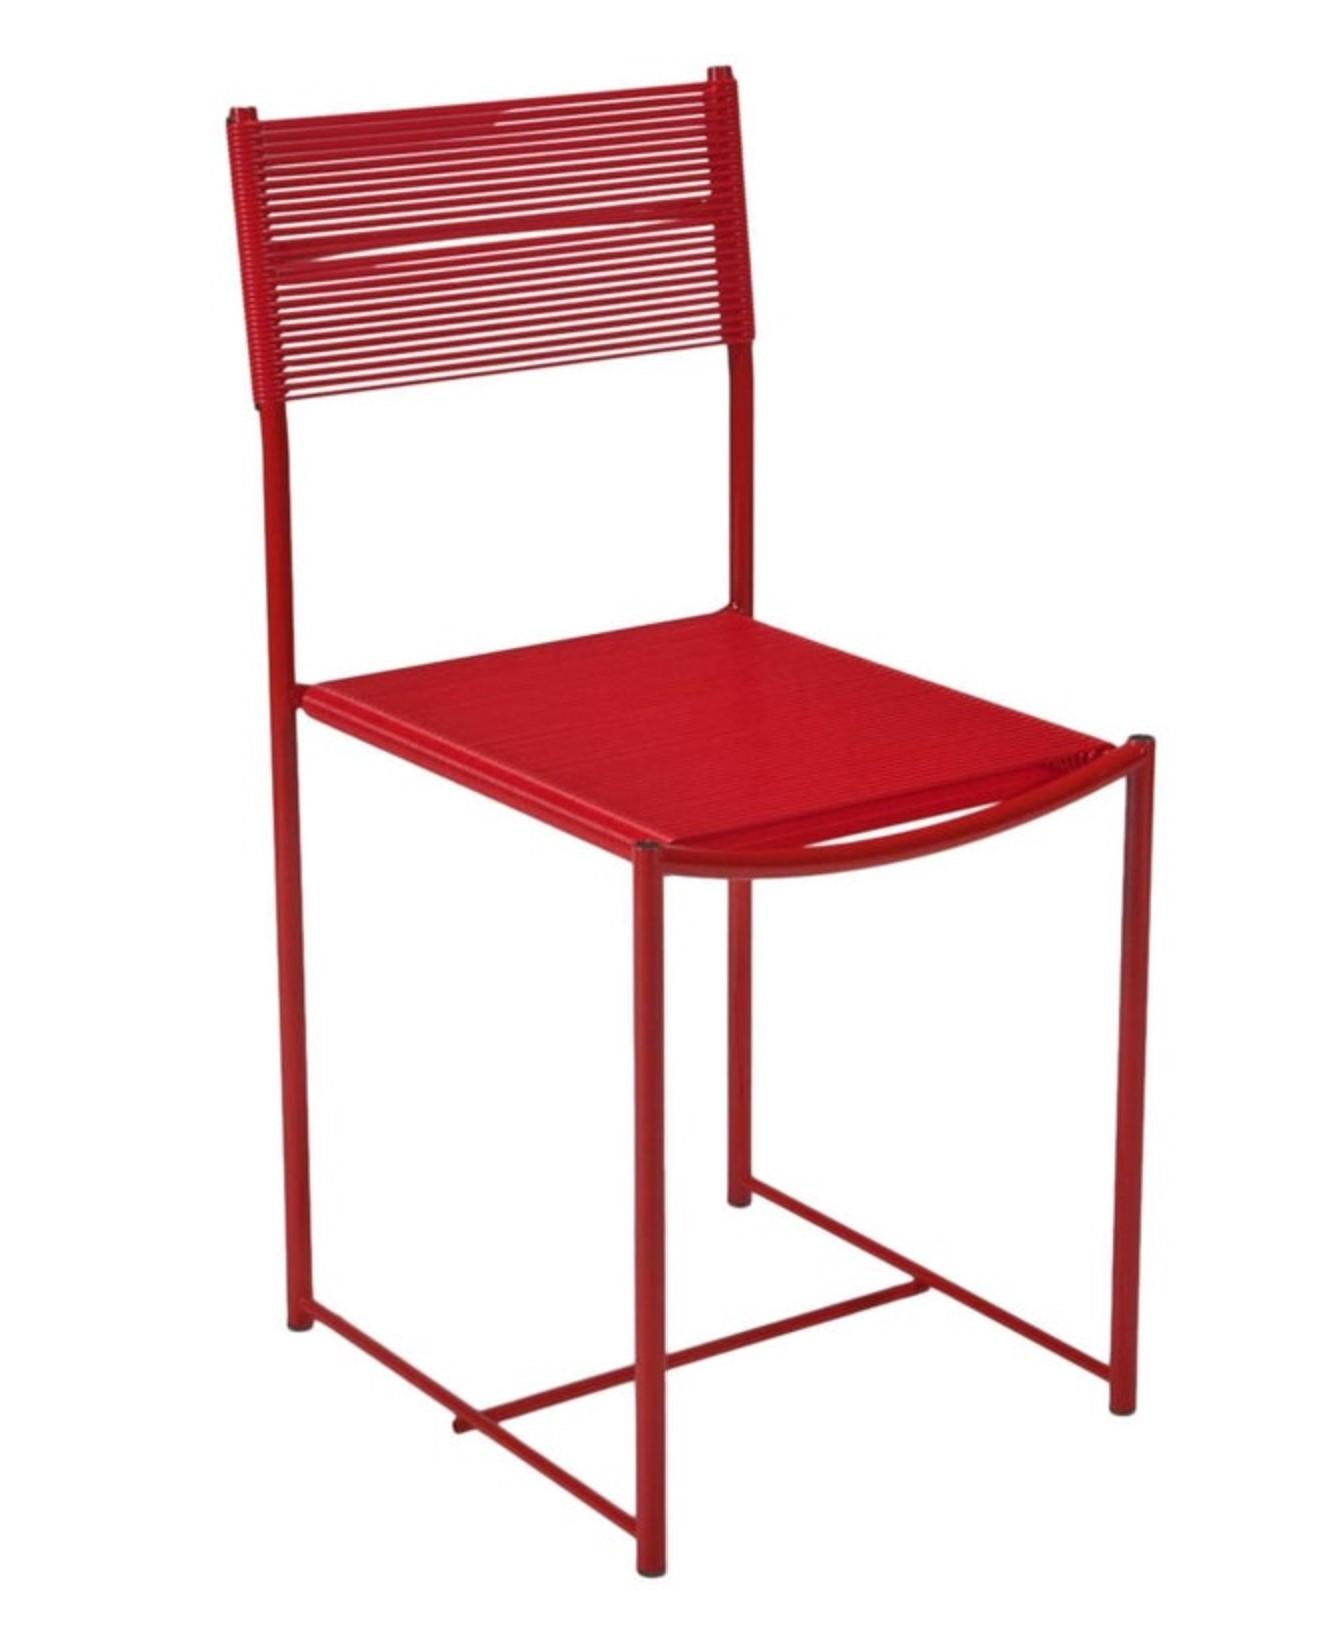 Conçues par Giandomenico Belotti (1922-2004), ces chaises Steele sont assez confortables avec leurs sangles spaghetti en PVC sur des piétements en acier. Un design très réussi de Belotti, ils font partie de la collection du MoMA. Cette édition est